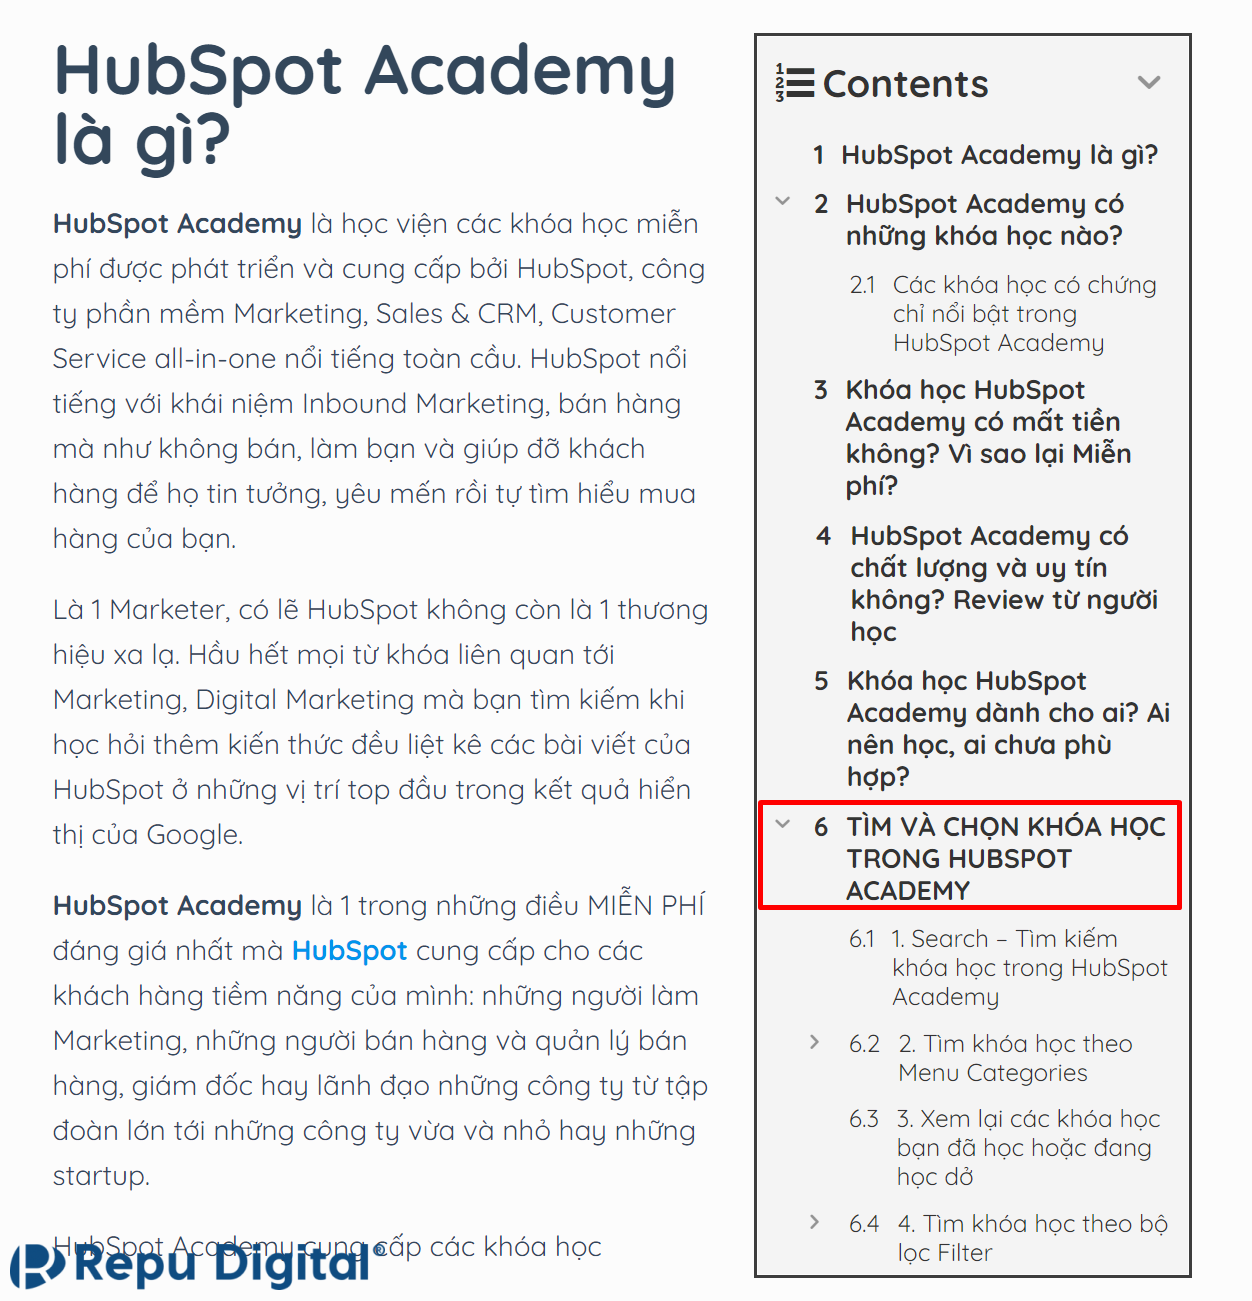 Mục tìm khóa học trong bài HubSpot Academy là gì